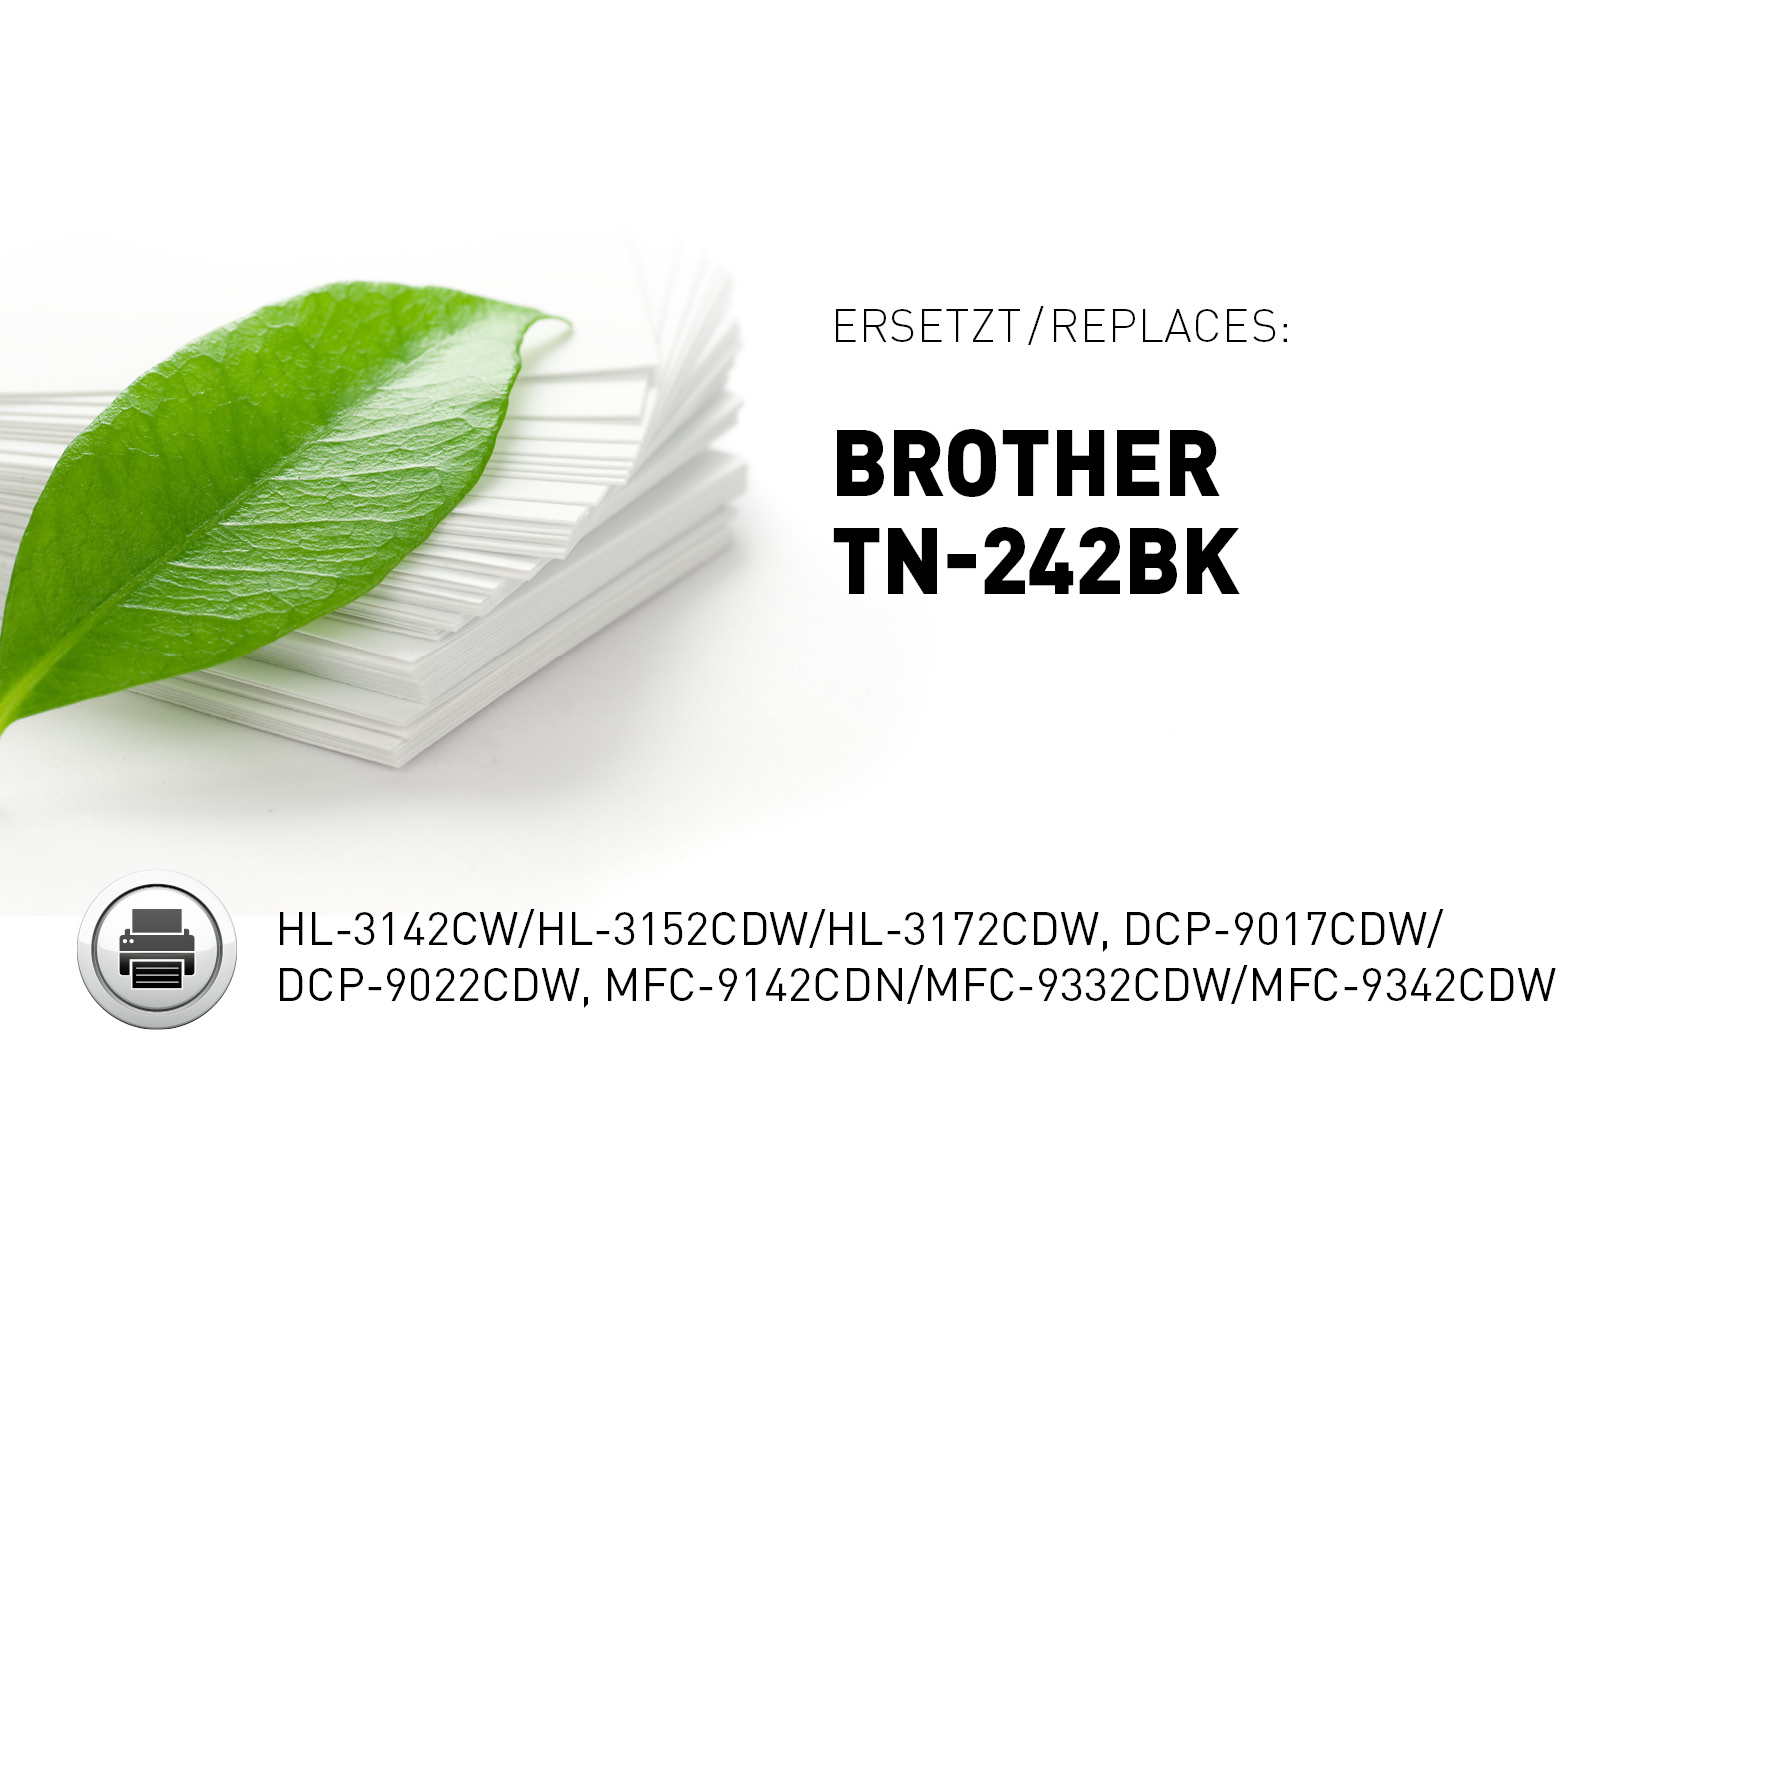 KMP ersetzt Brother TN-242BK TN-242BK) Toner (Brother Schwarz